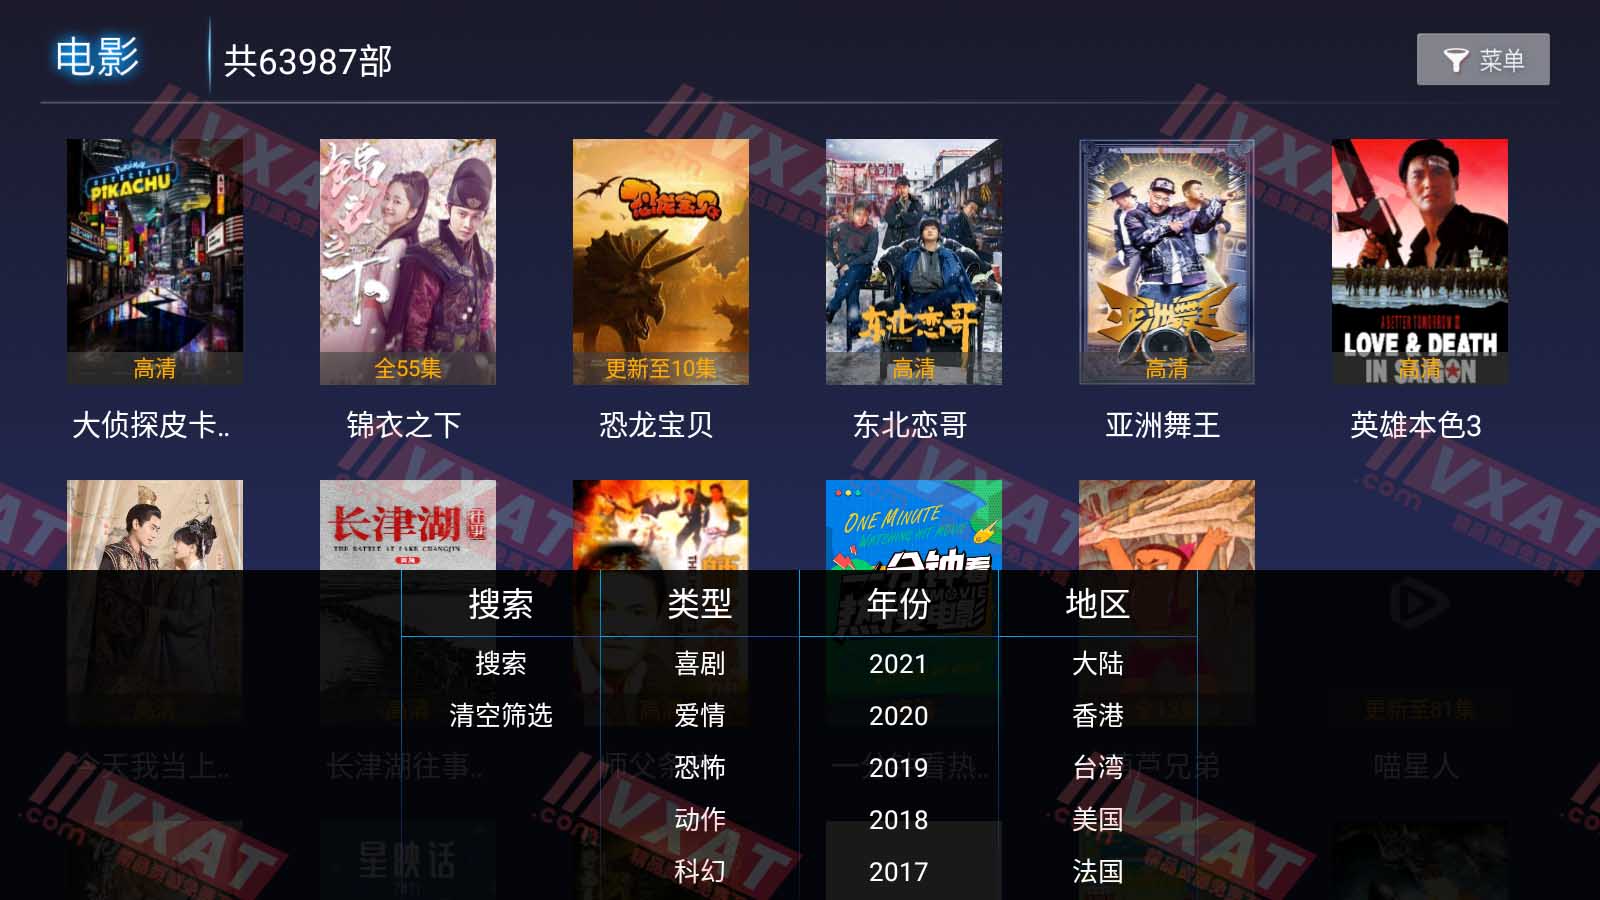 凌雪影视 v3.0.3 免登录免授权电视版 第1张